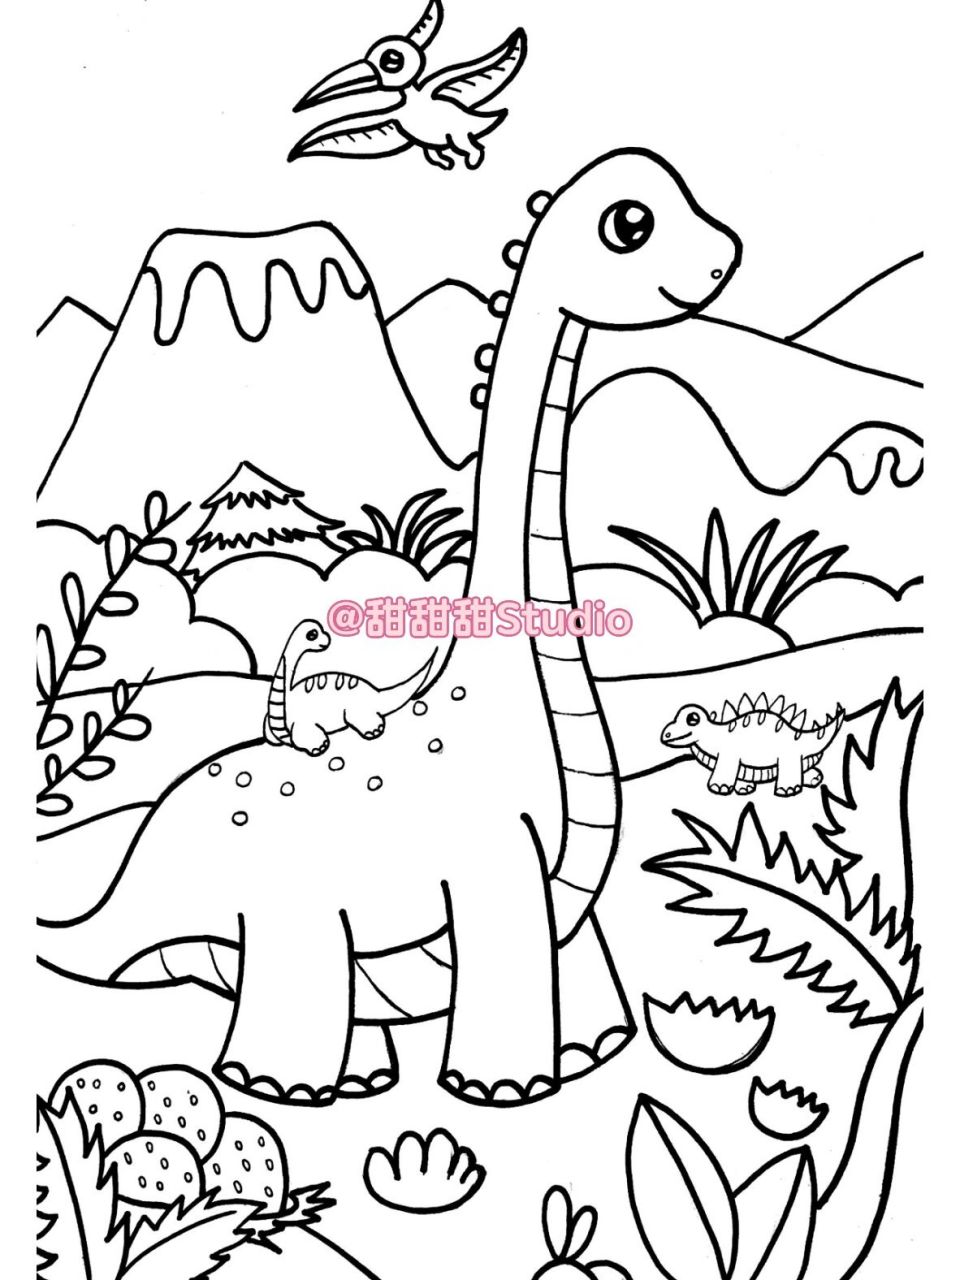 三年级恐龙世界简笔画图片